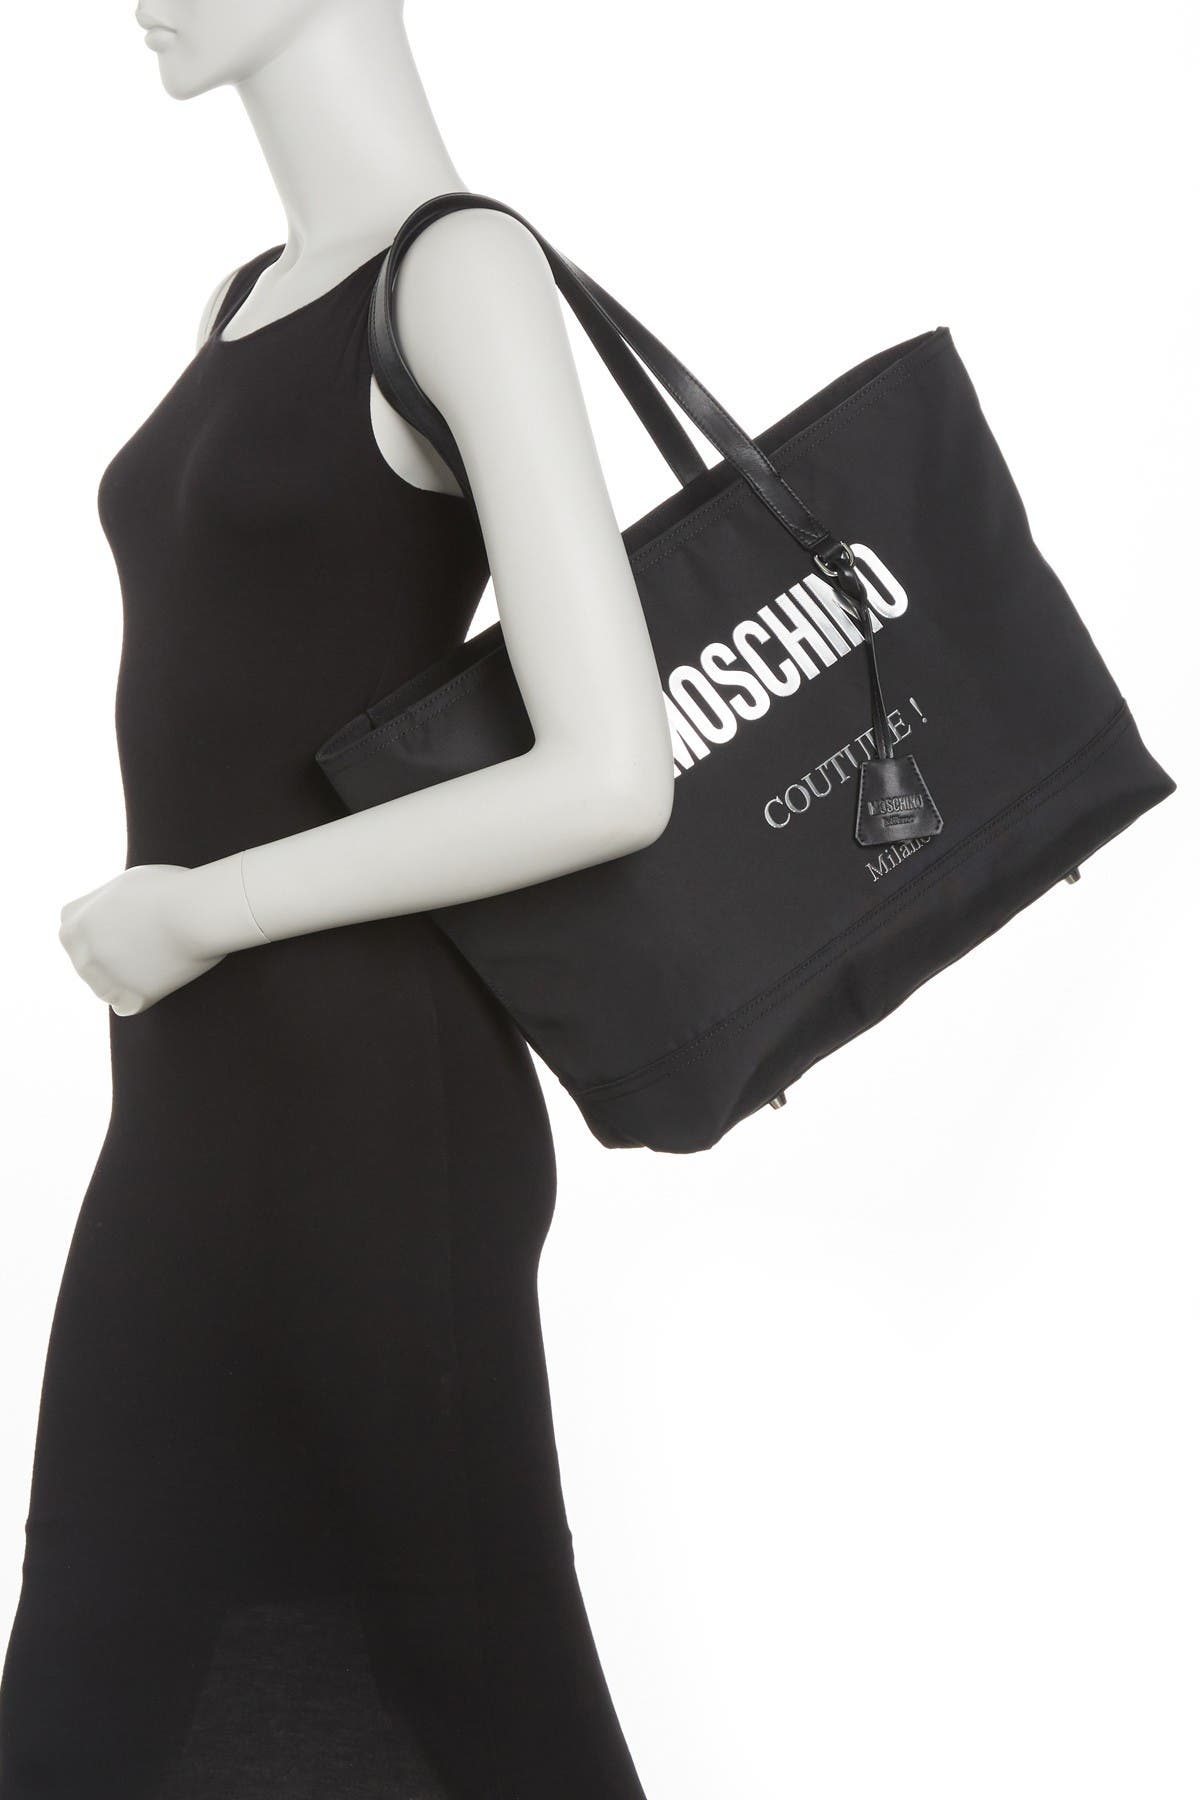 MOSCHINO Large Designer Tote Bag Shoulder Bag Handbag Womens Work Travel Bag & 